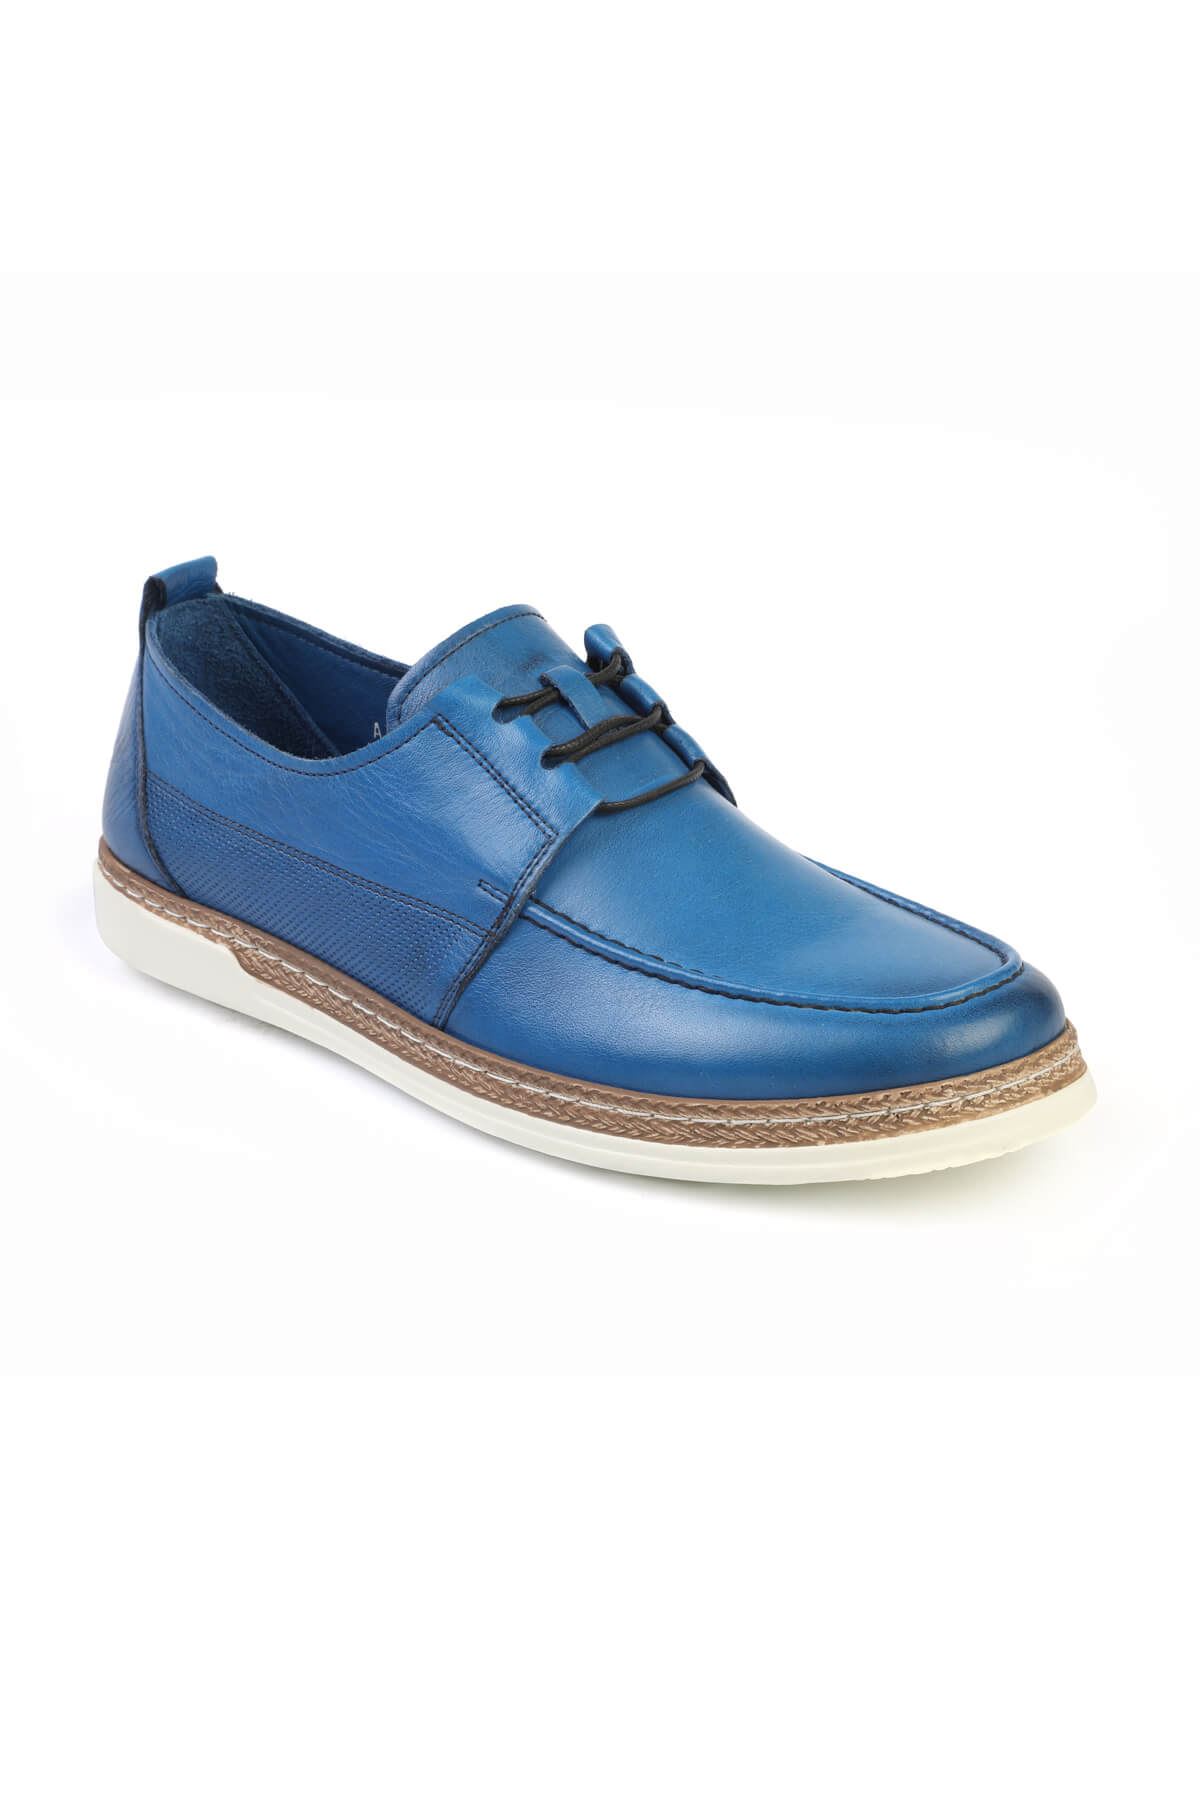 Libero C626 Saxe Blue Casual Shoes